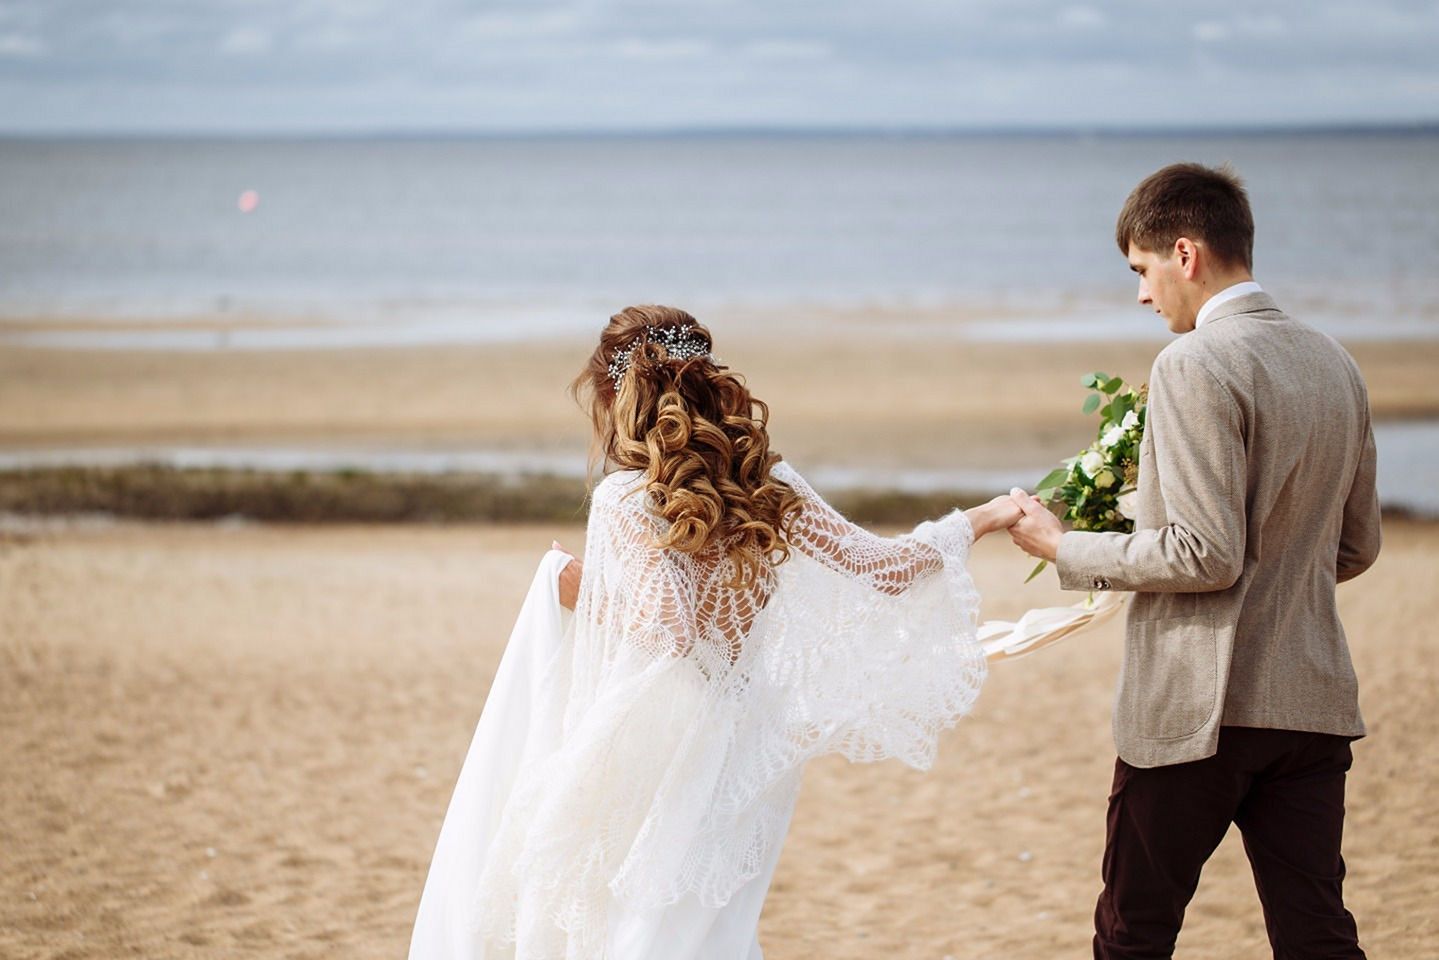 Wedding celebration in beach from weddywood.ru